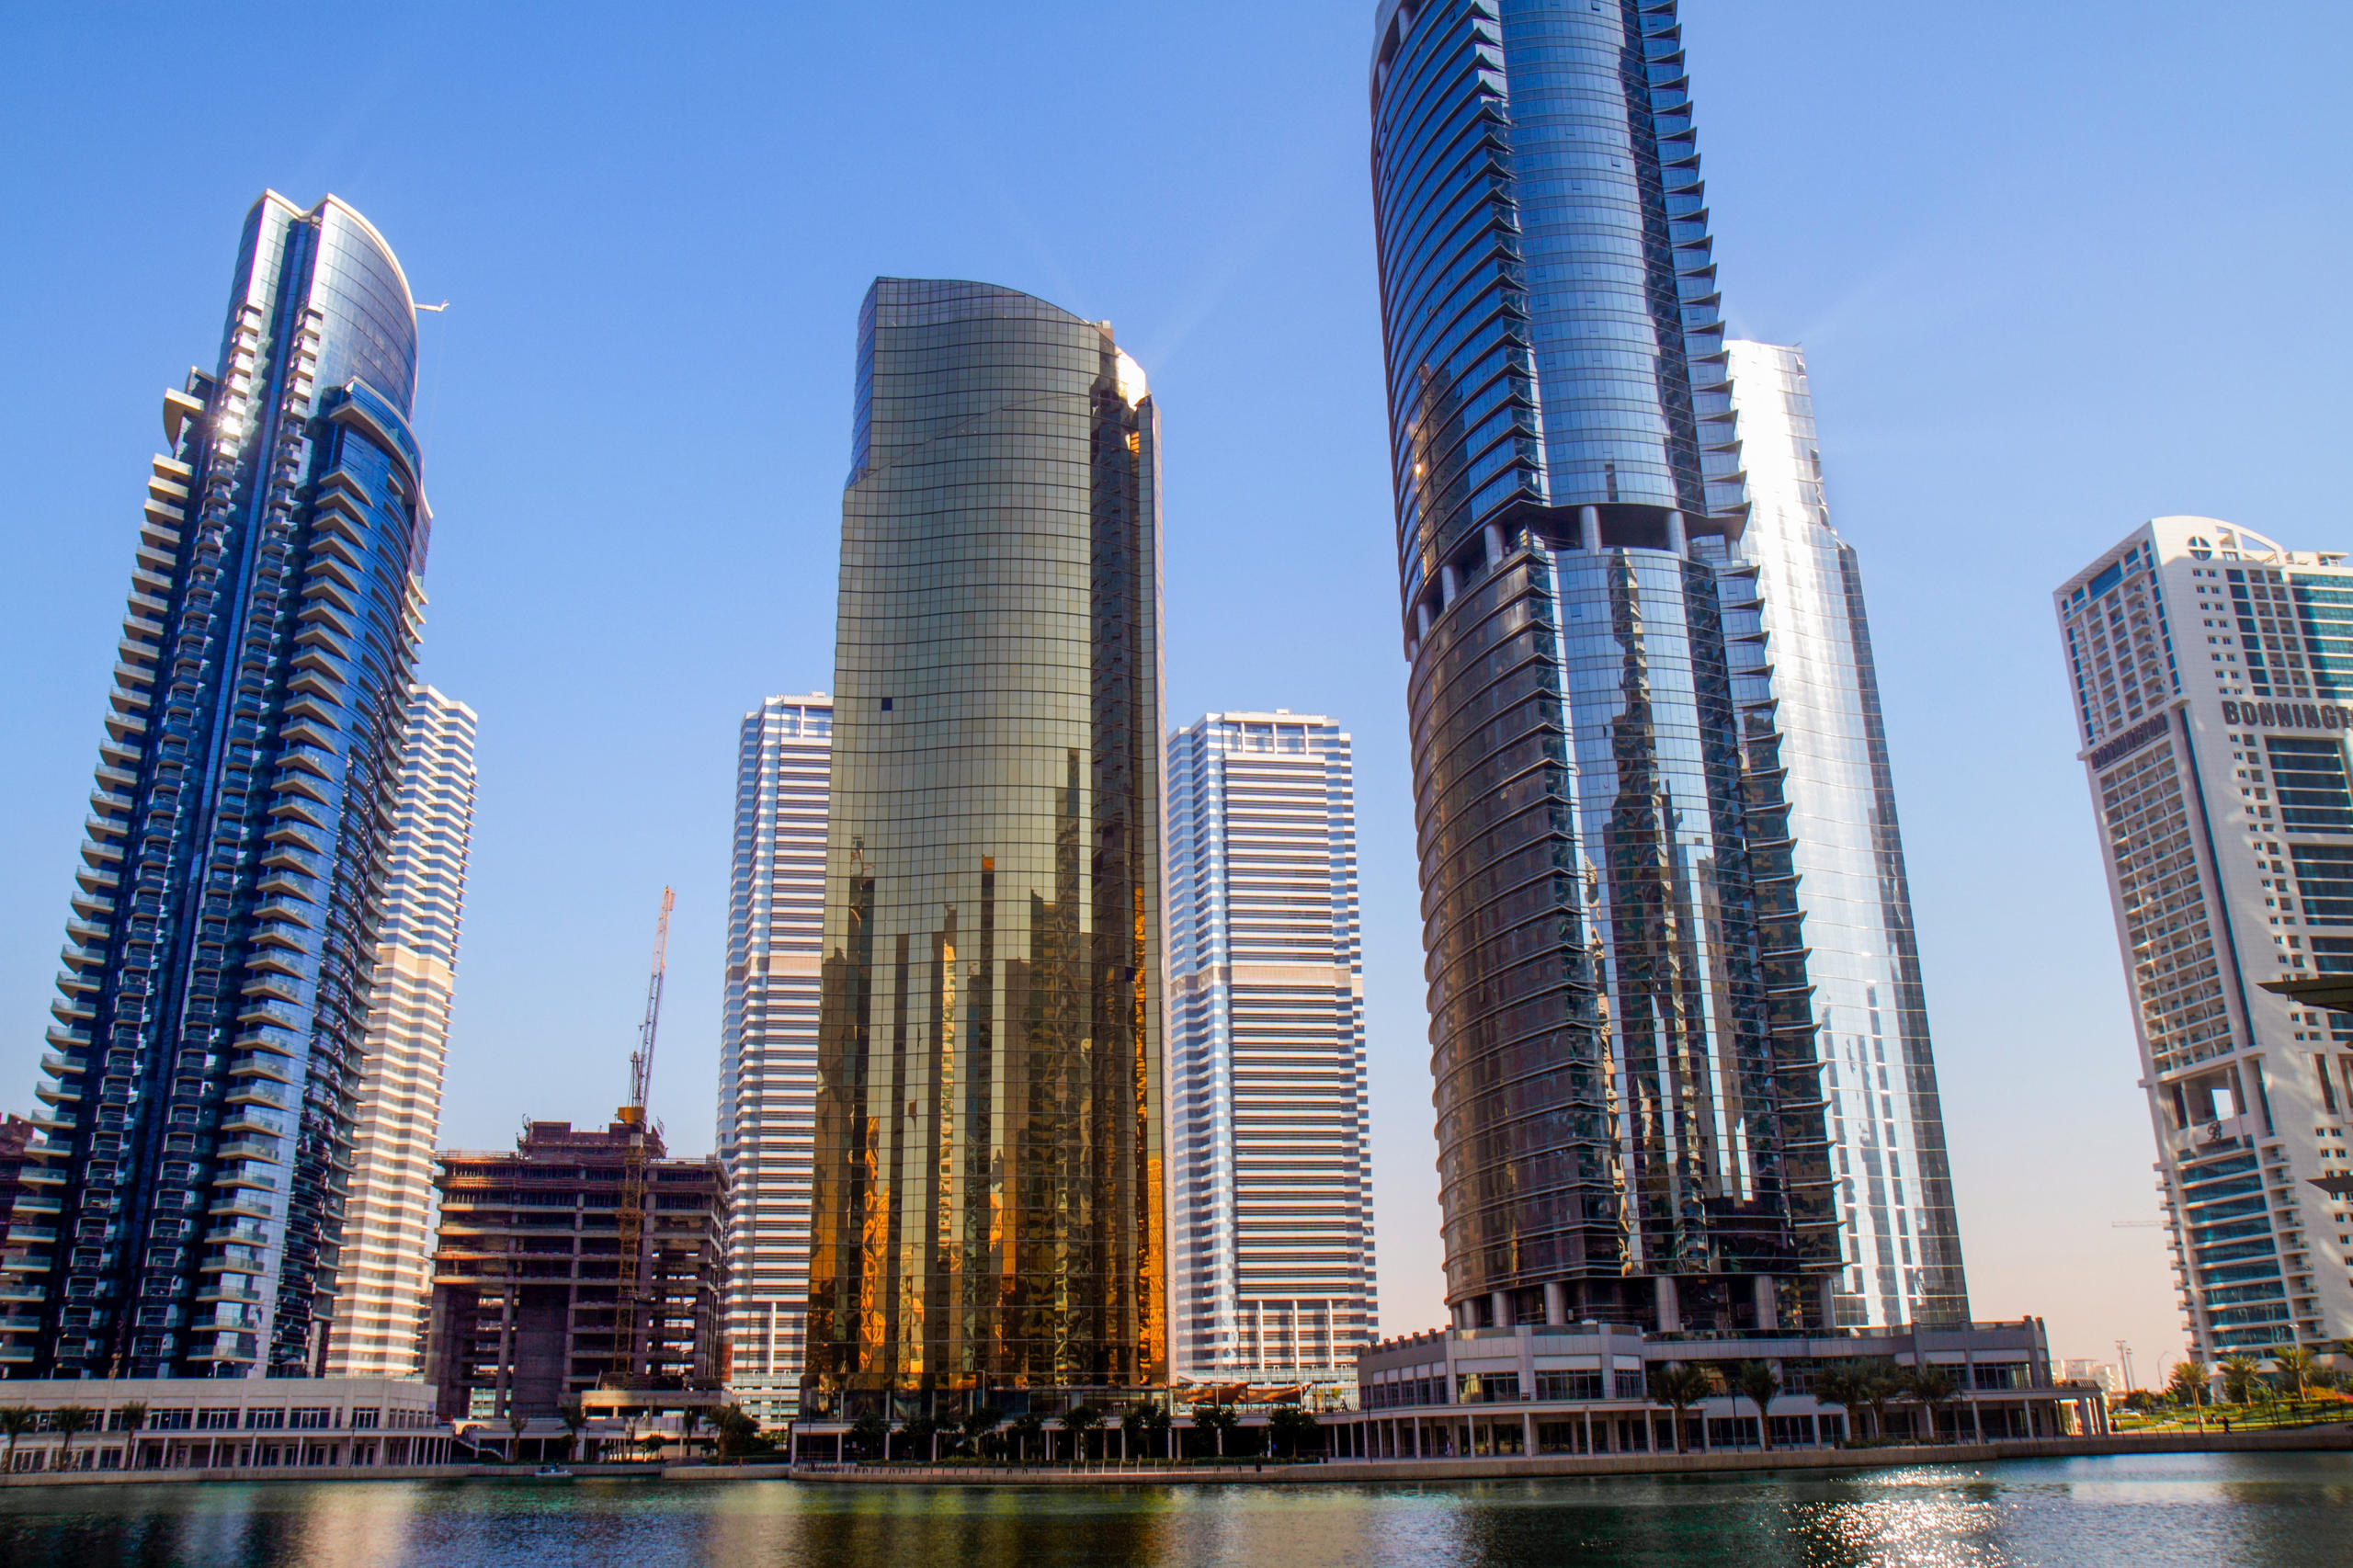 البرج الذهبي هو جزء من أبراج بحيرة جميرا في دبي.